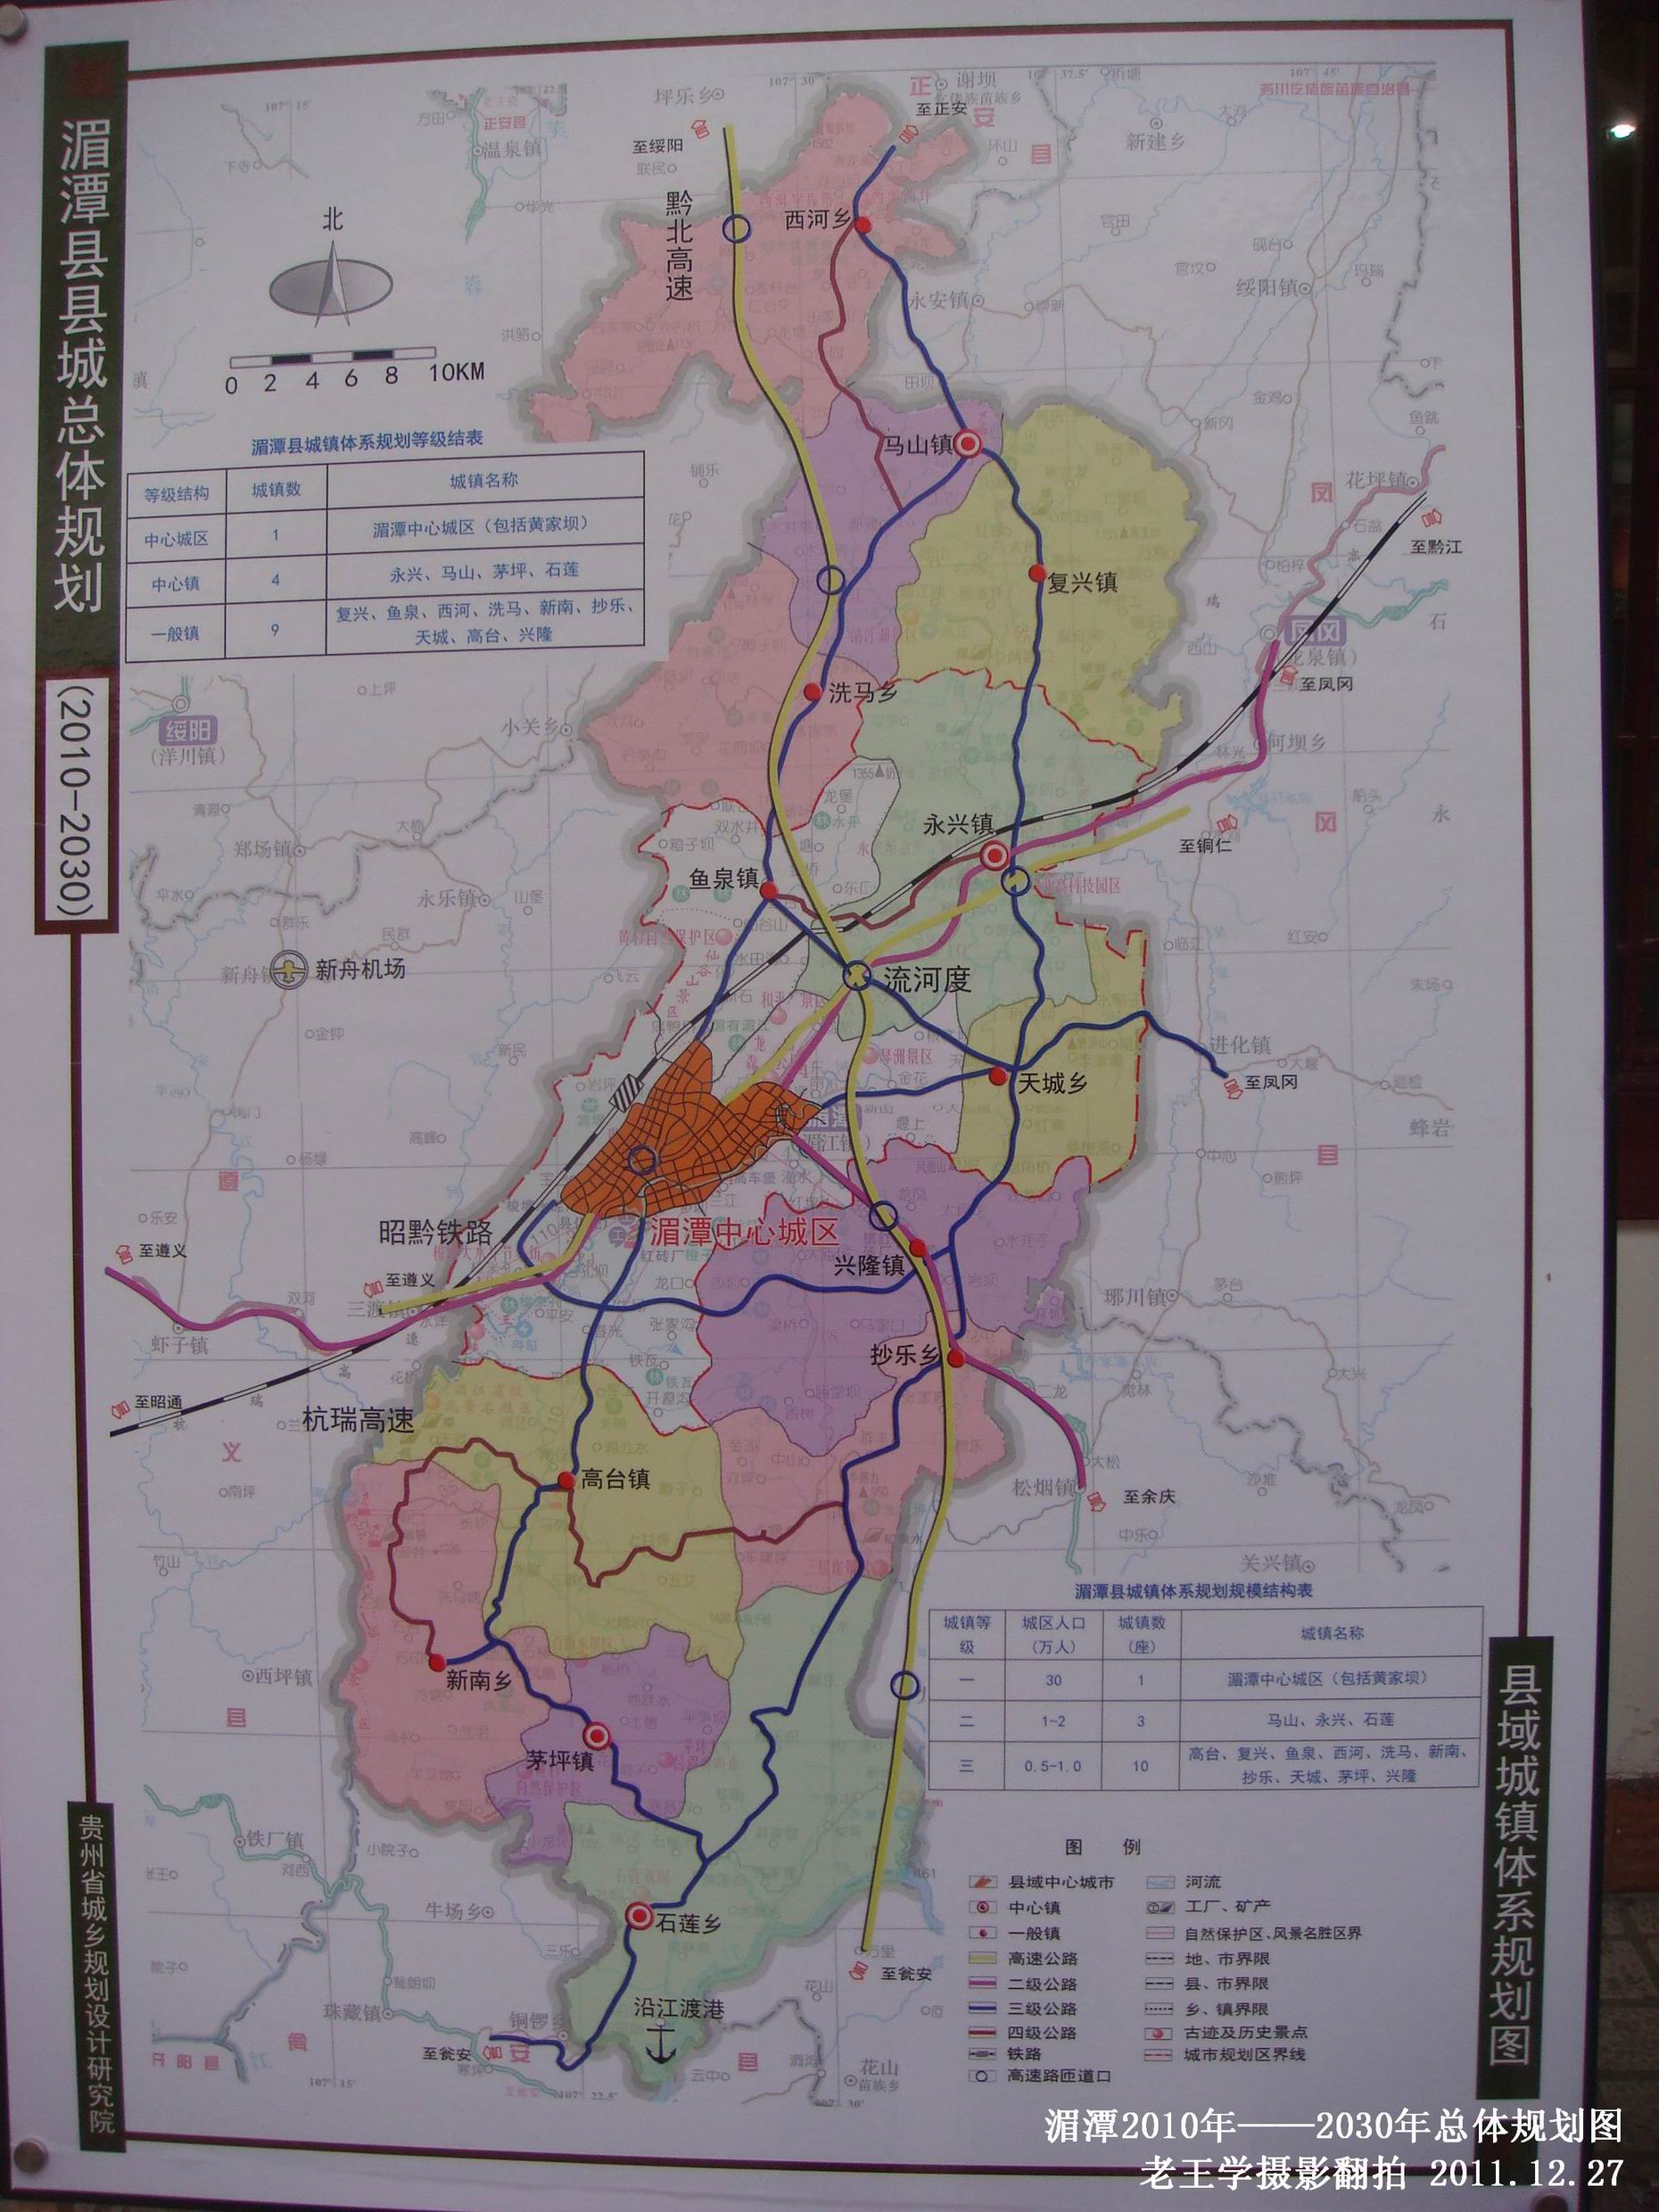 [原创]湄潭2010年——2030年总体规划图